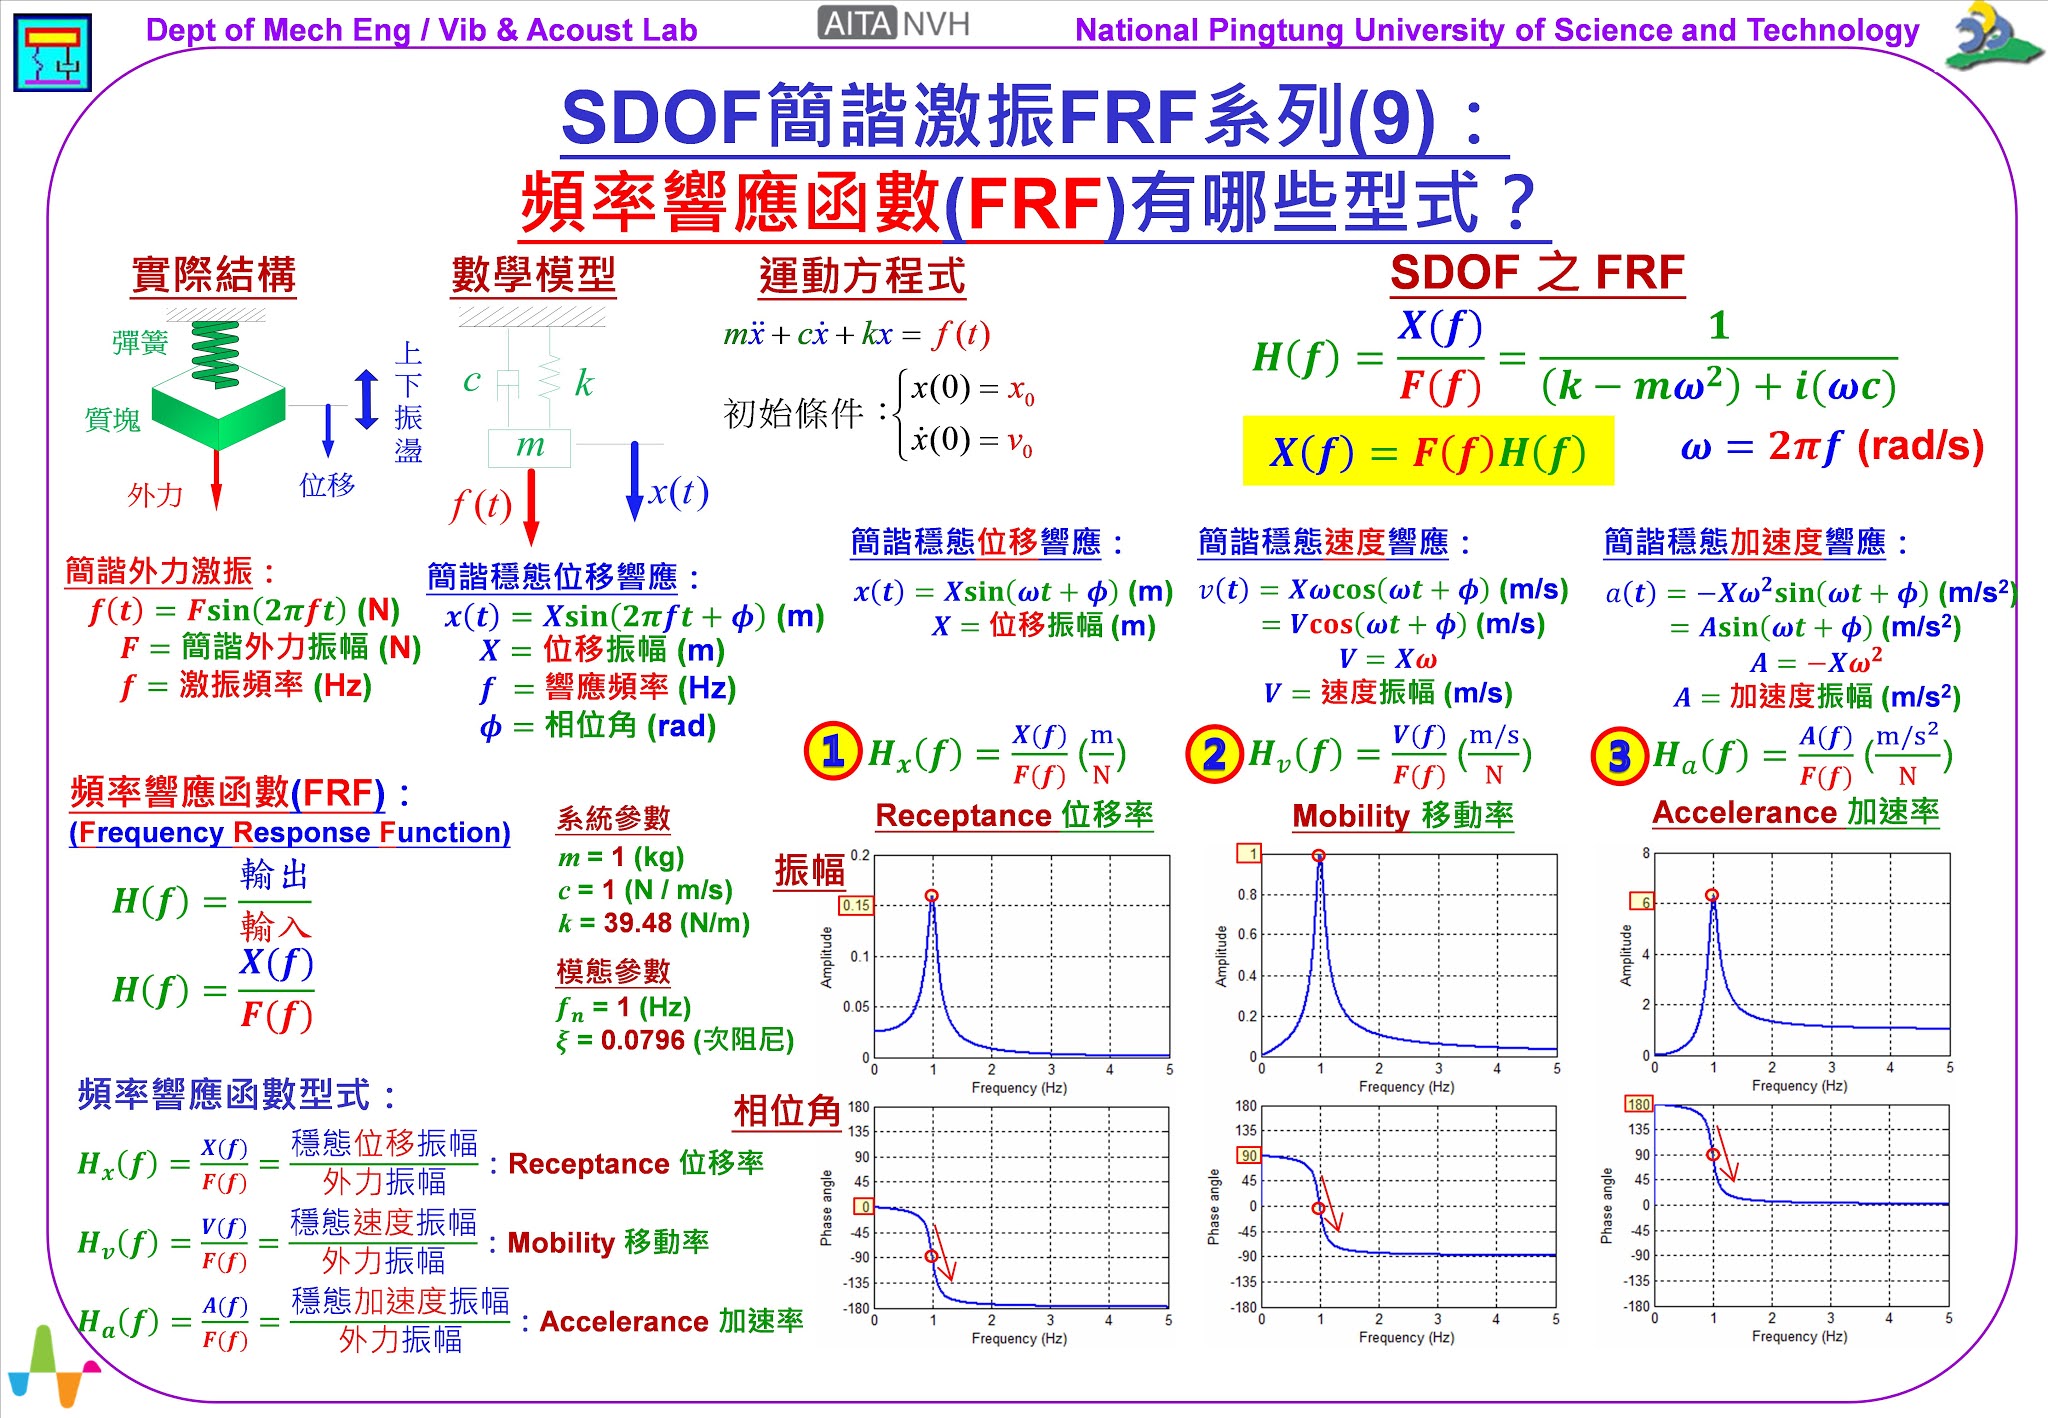 振動噪音產學技術聯盟: 《振動噪音科普專欄》SDOF簡諧激振FRF系列(9 